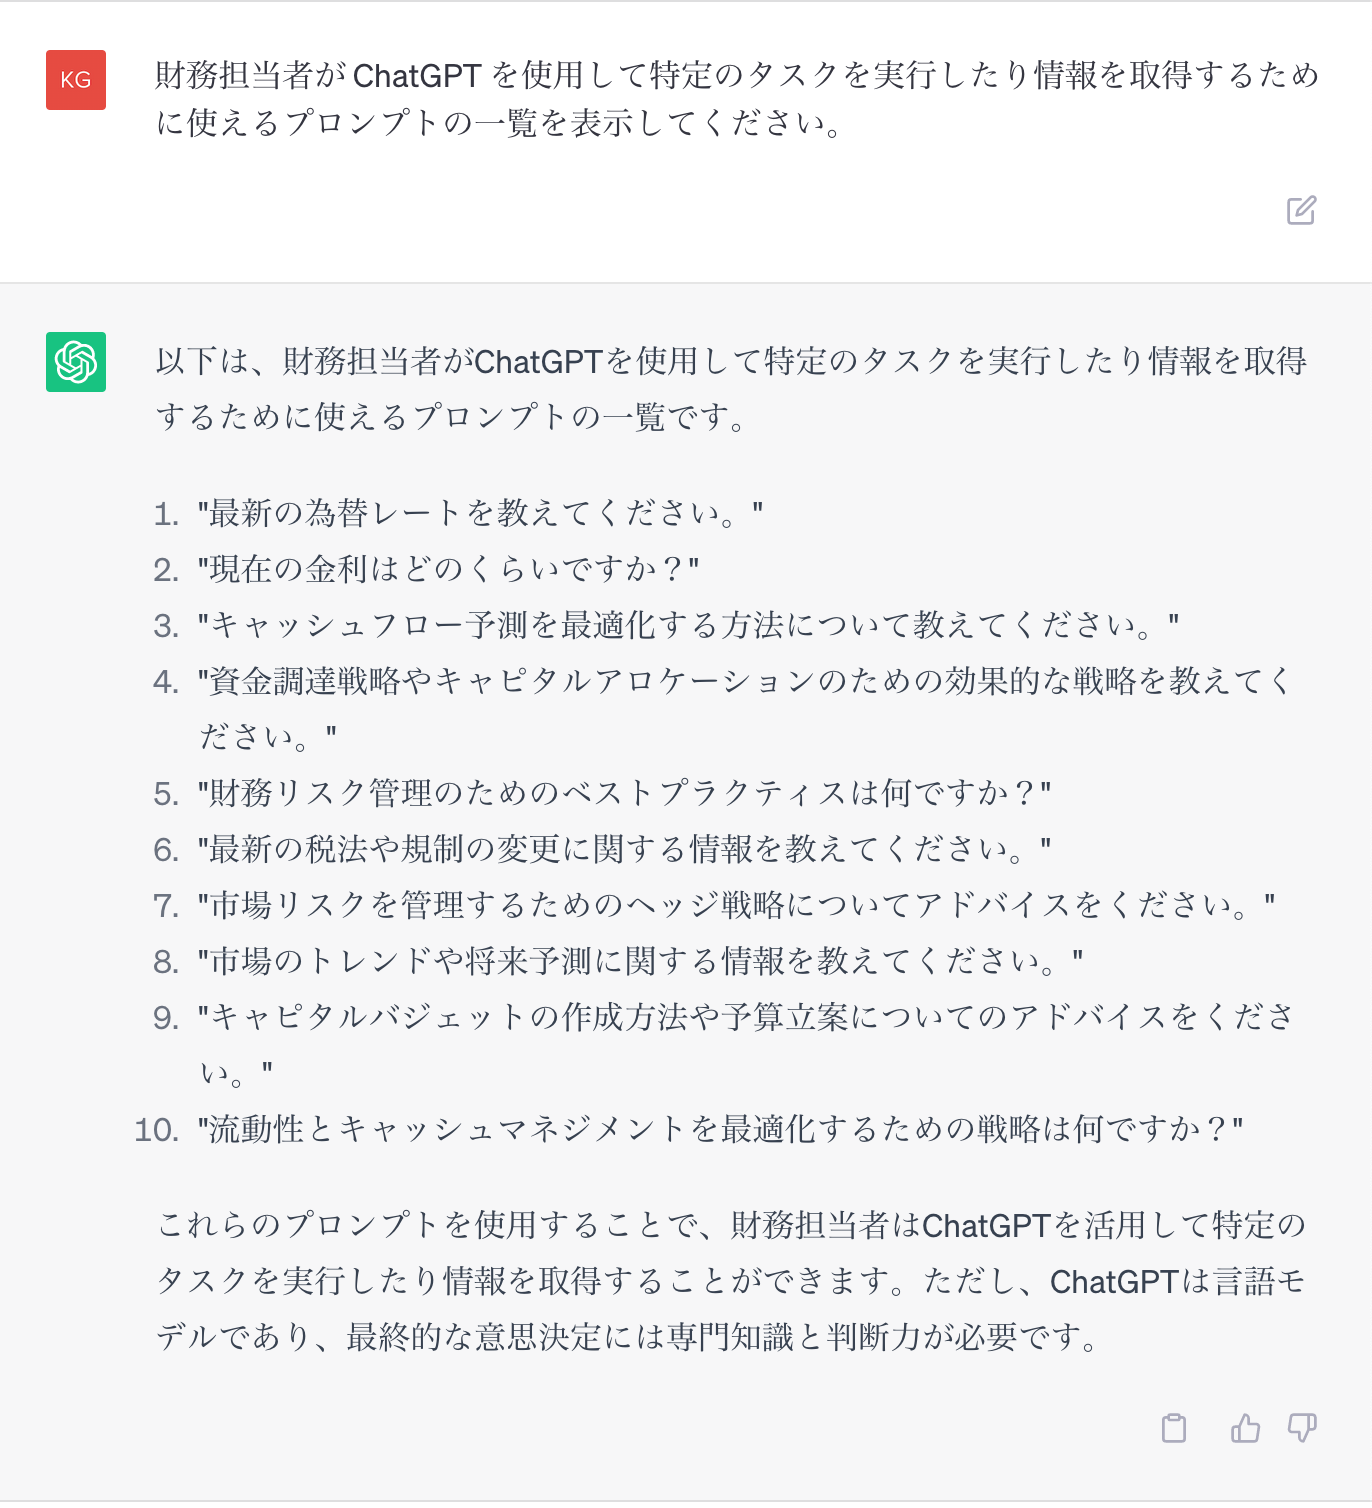 トレジャリー・マネジメントのタスクに ChatGPT を使用するための例の一覧のプロンプト (日本語)